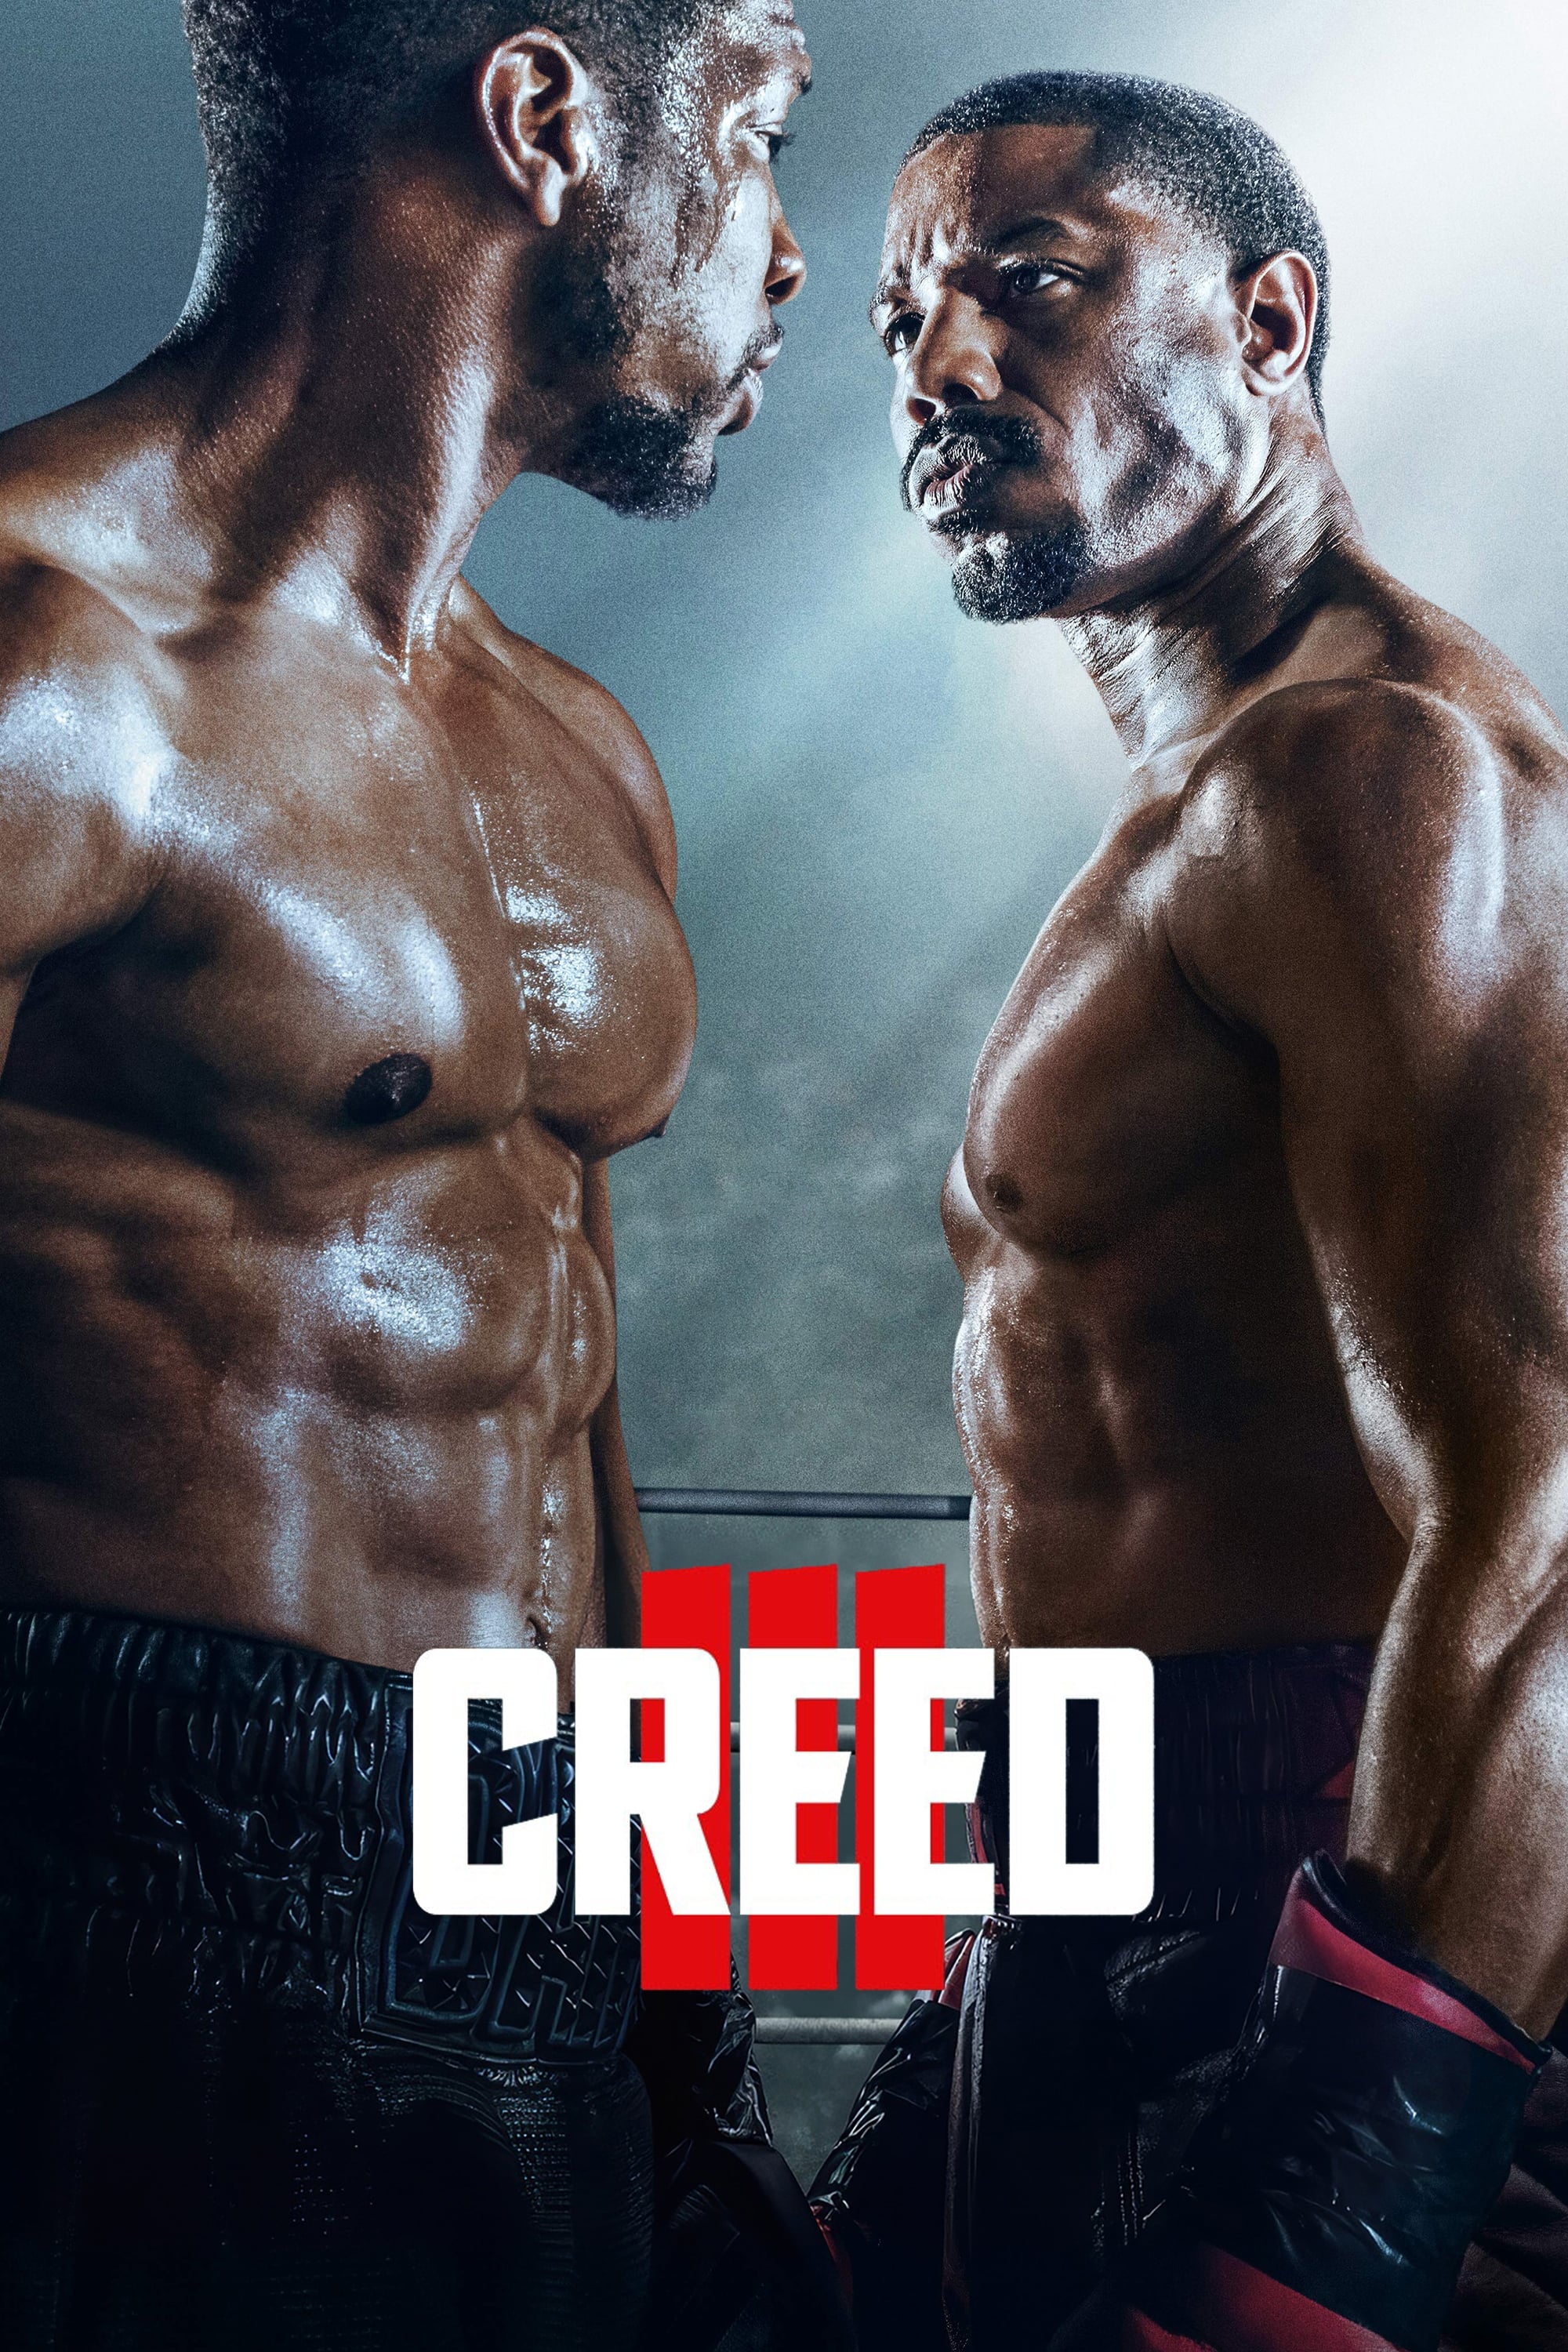 Caratula de Creed III (Creed III) 